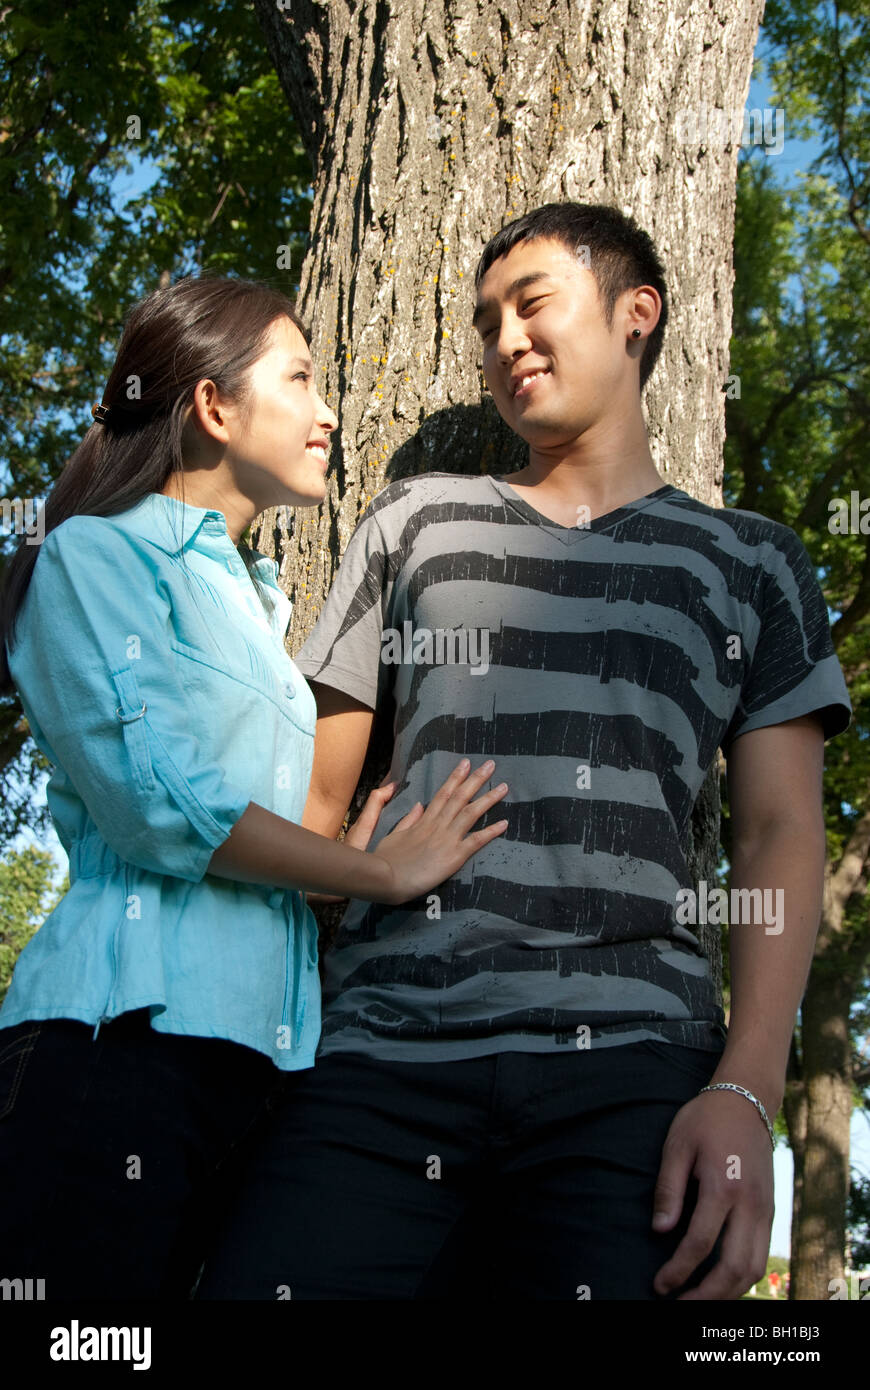 Jeune couple se placer à côté de l'arbre dans le parc Assiniboine, Winnipeg, Manitoba, Canada Banque D'Images